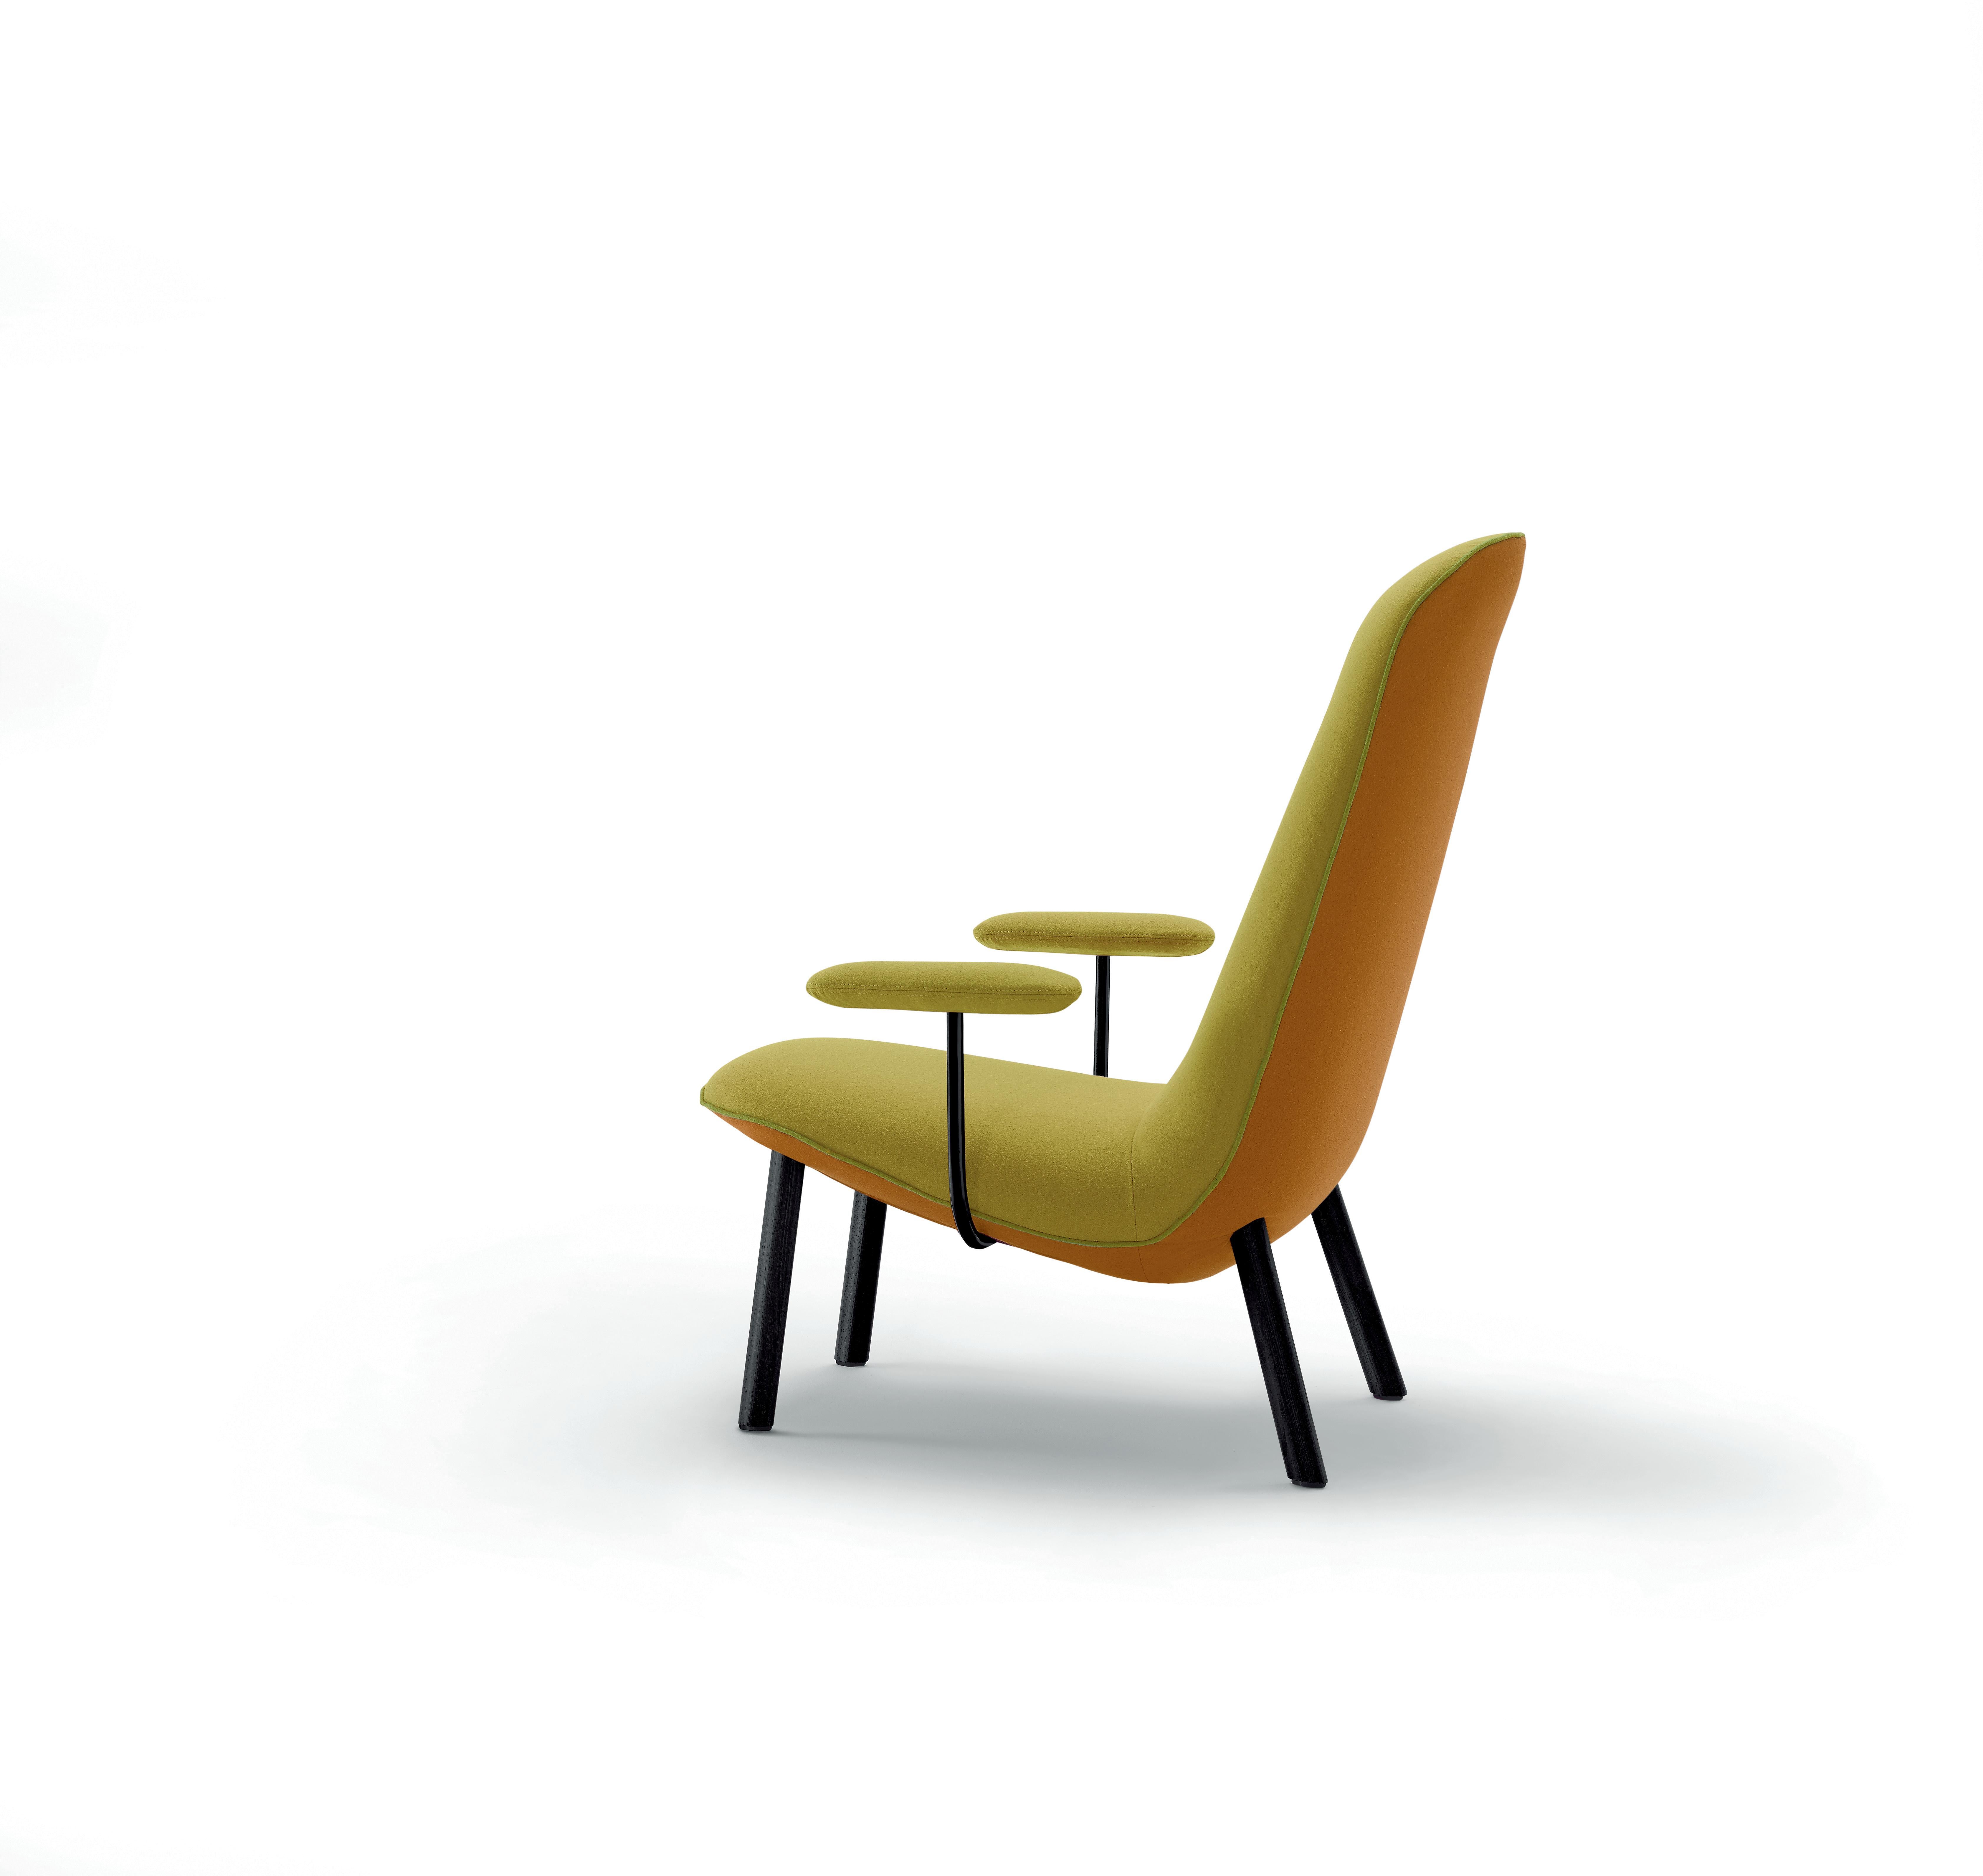 Avec la chaise longue Leafo, Hayon a cherché à créer un objet qui associe de manière unique douceur et légèreté. Une chaise simple qui peut être placée dans des espaces aussi bien réduits que spacieux. Cette forme particulière s'inspire d'une